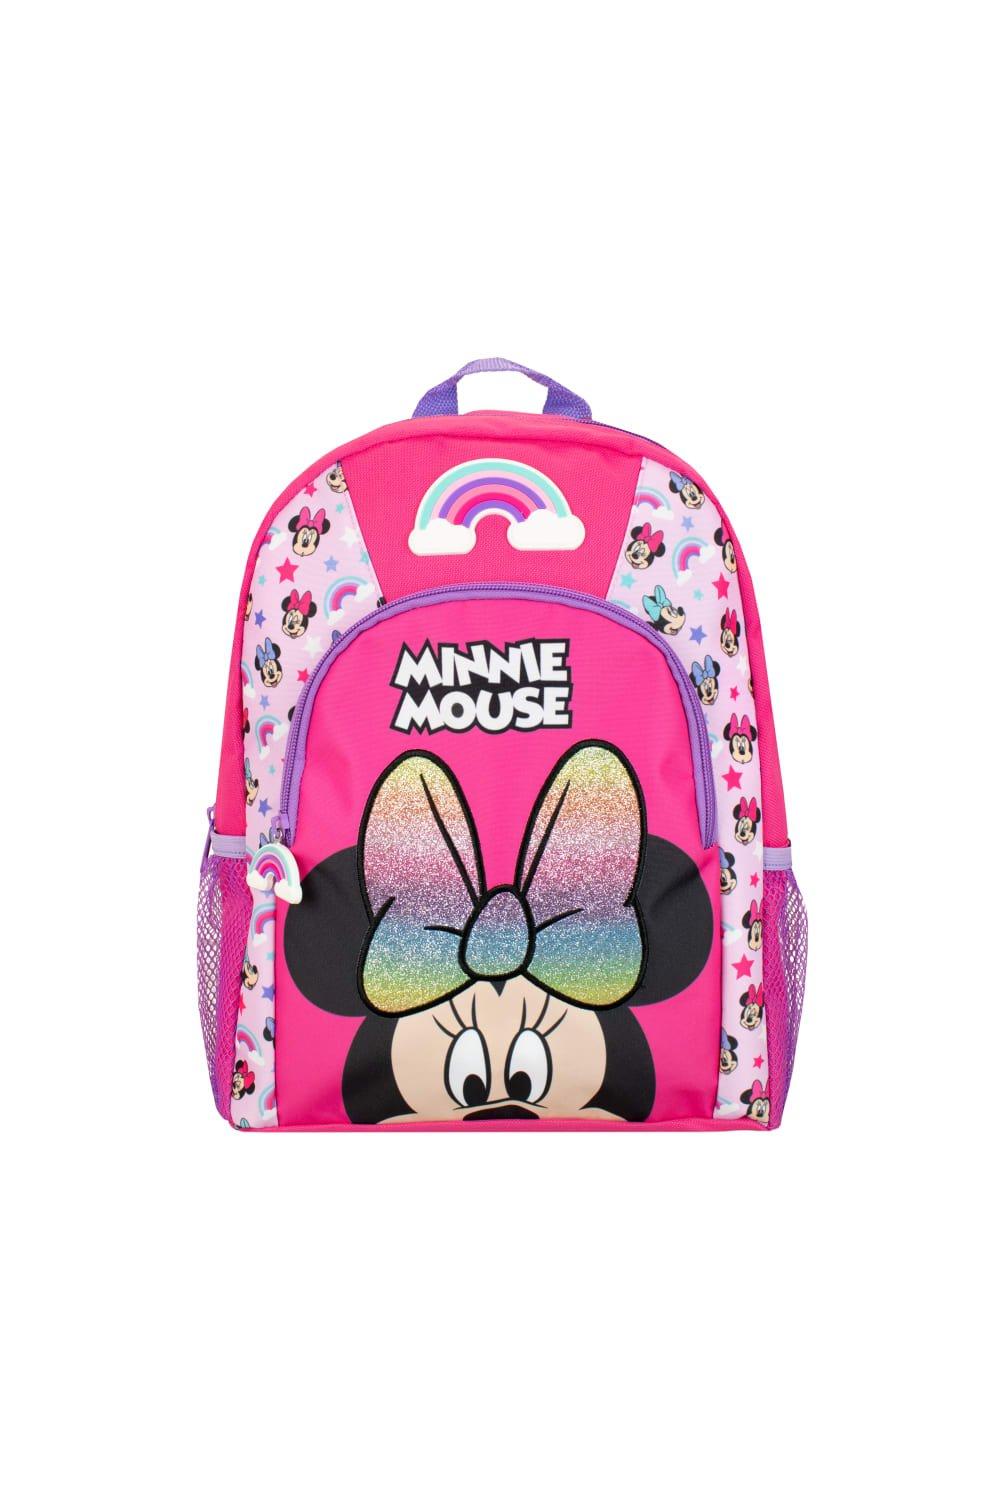 Детский рюкзак с Минни Маус Disney, розовый детский рюкзак с минни маус disney розовый